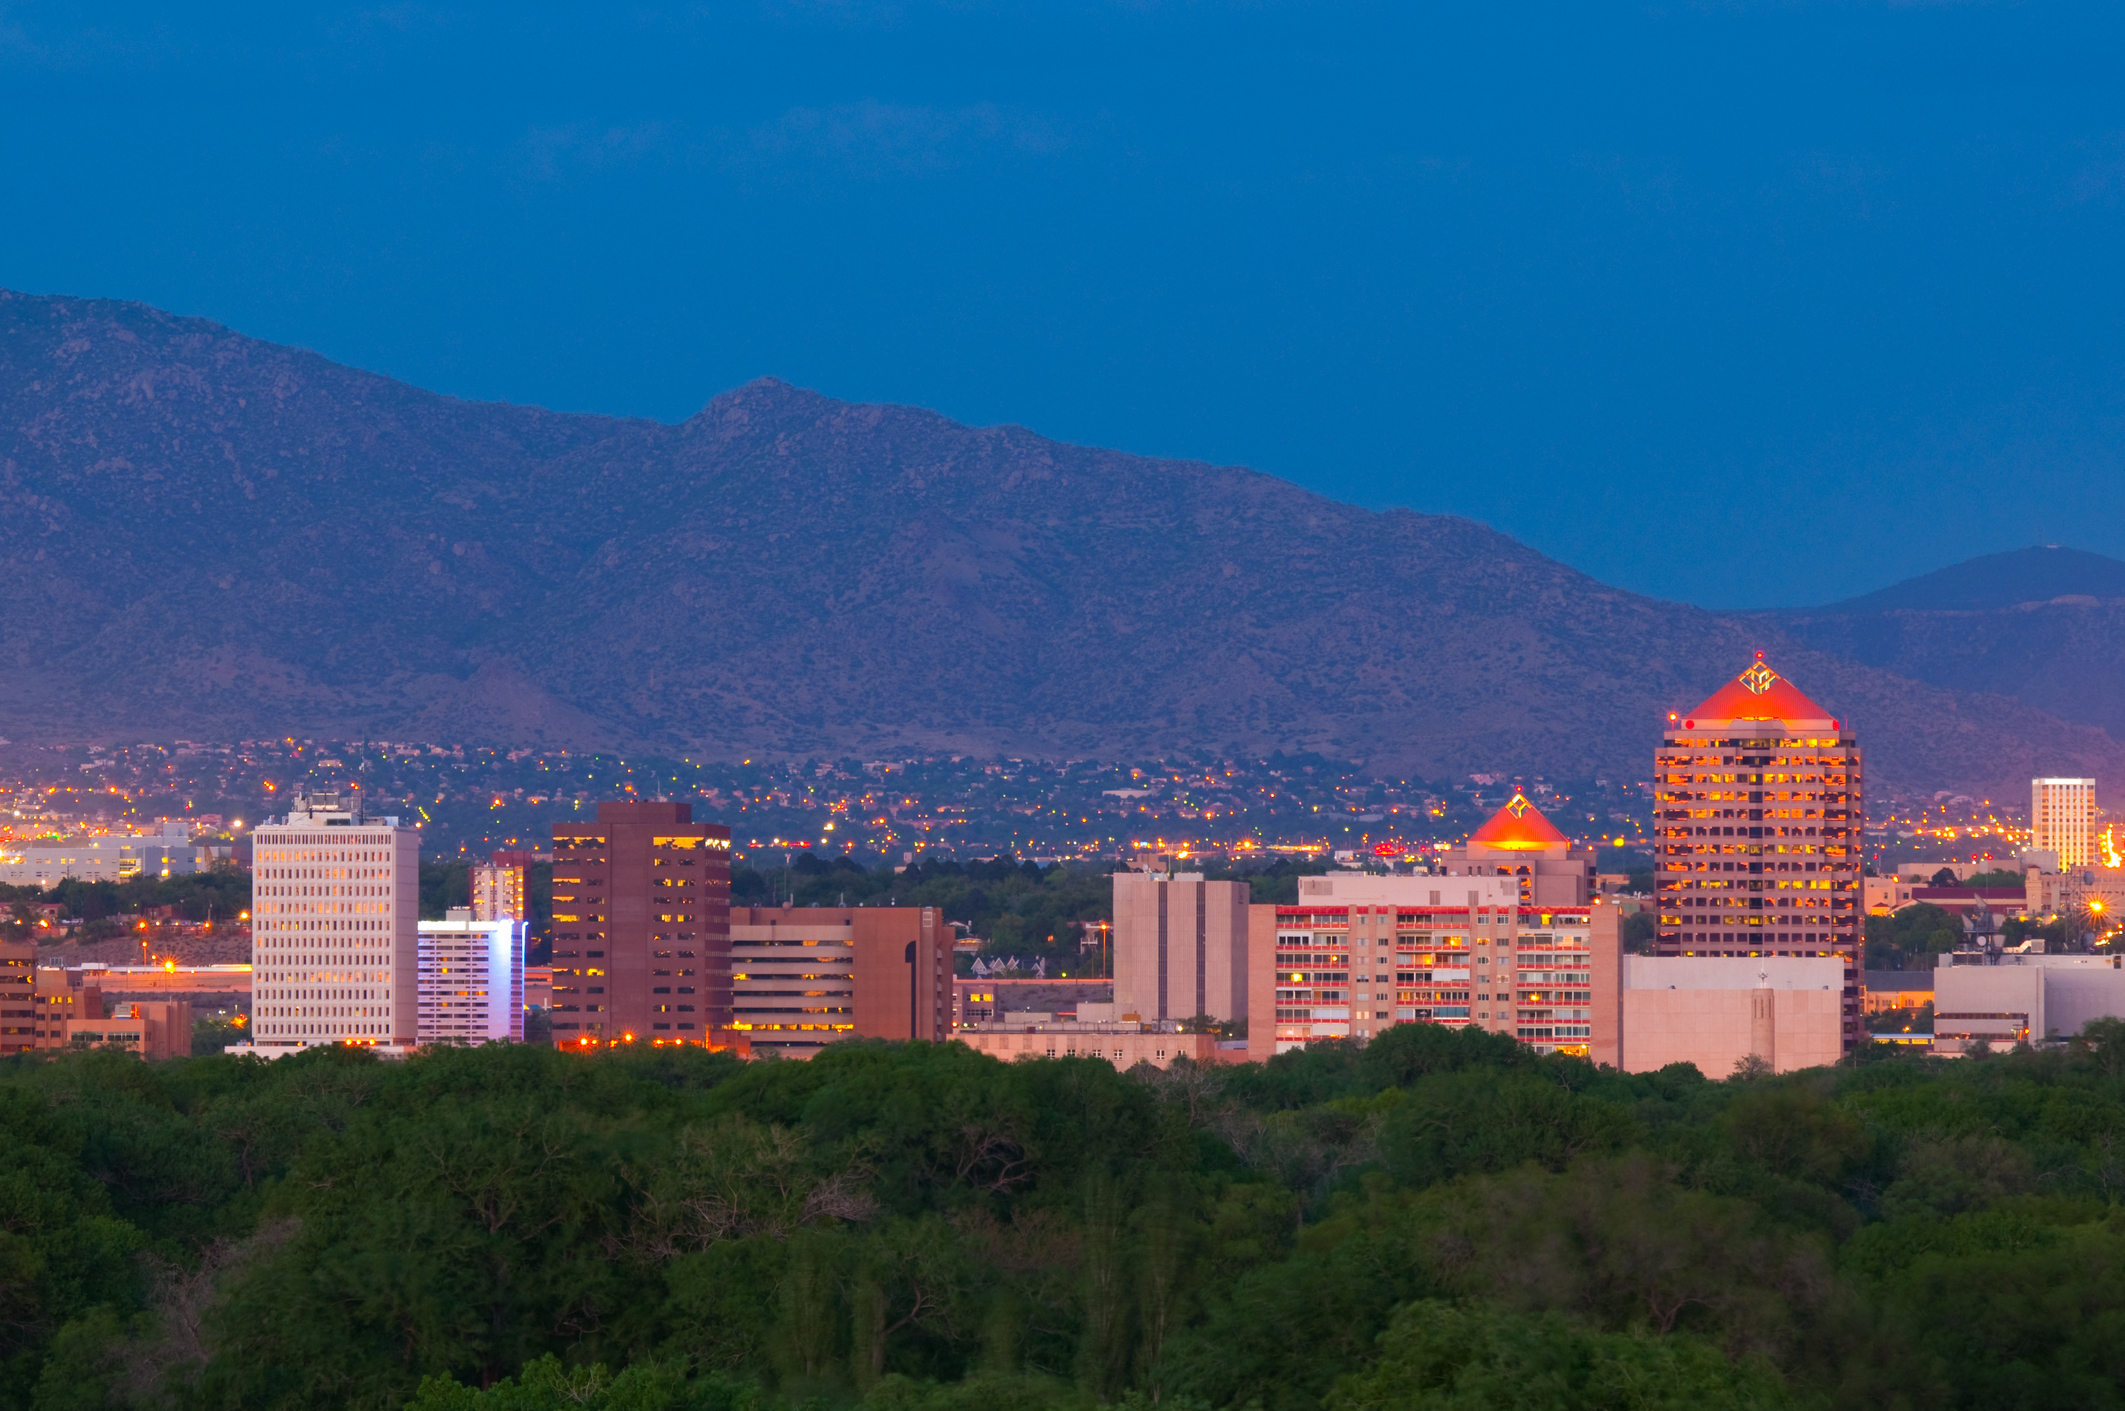 NM-Albuquerque image